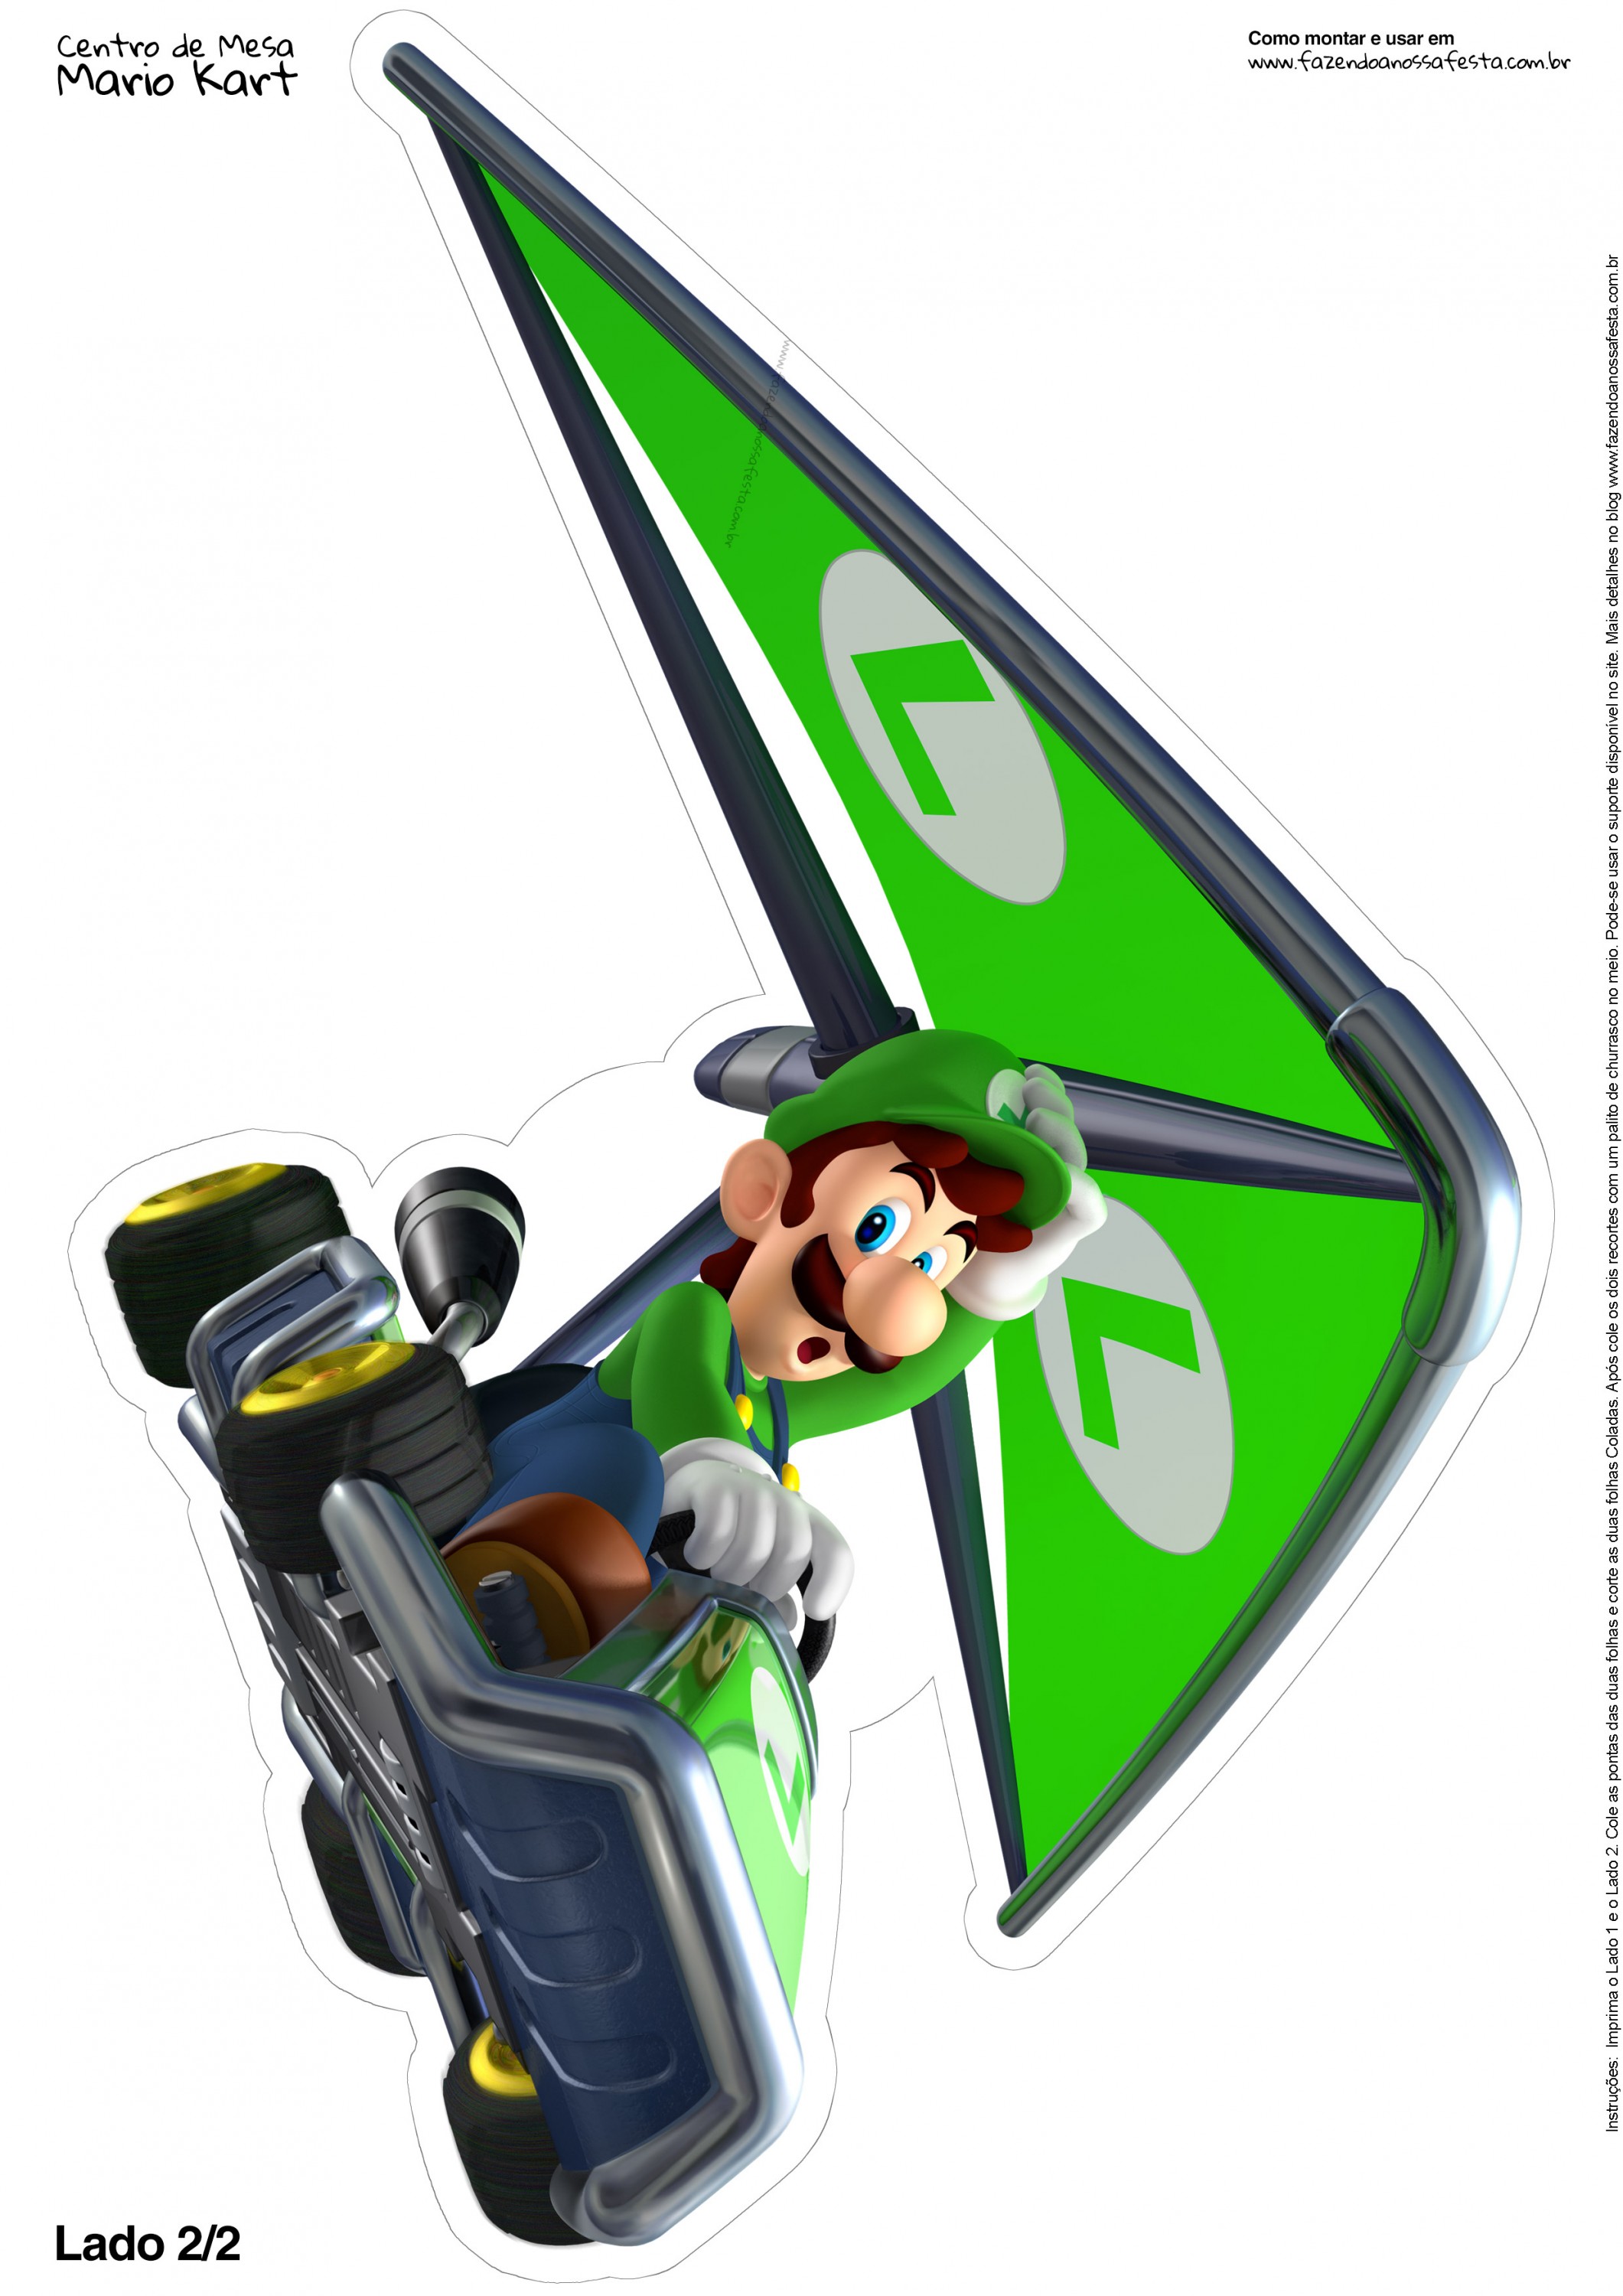 Centro de Mesa Mario Kart Luigi 2 2